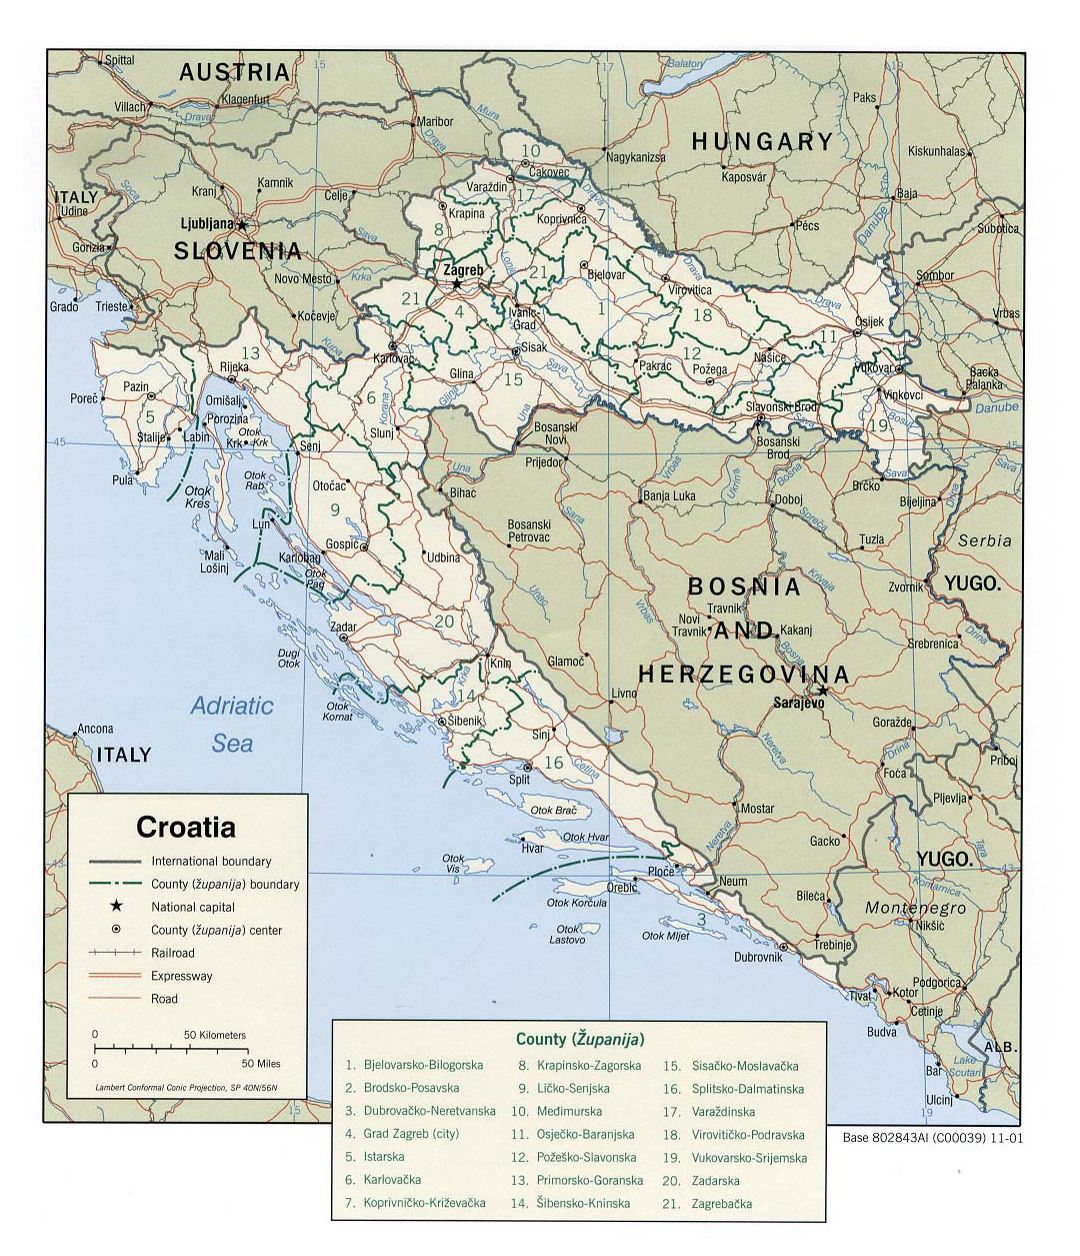 Mapa político y administrativo grande de Croacia con caminos y ciudades - 2001